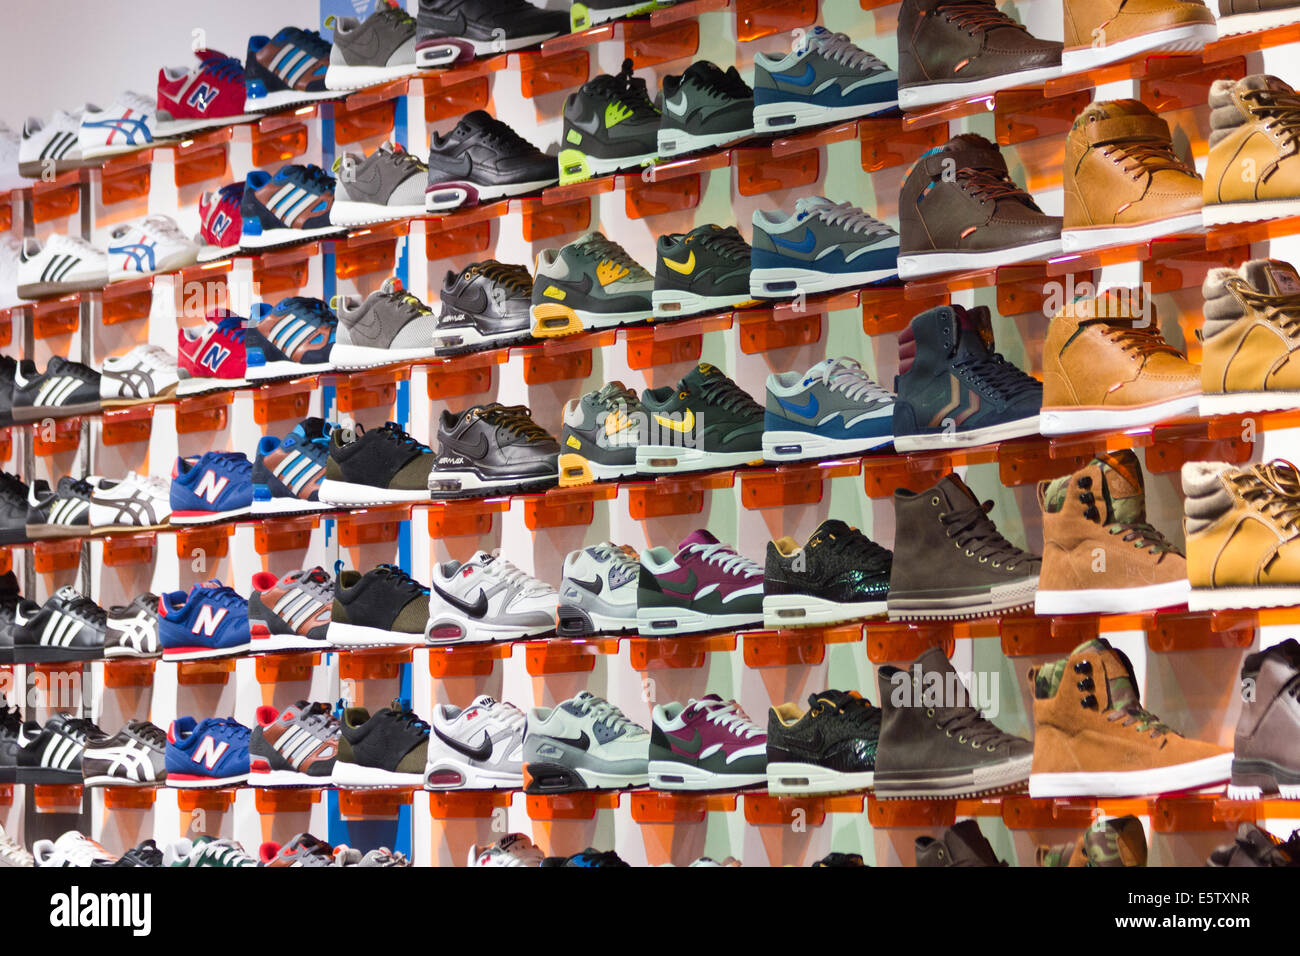 Köln, Deutschland - 21 Dez.: Wand mit Sportschuhe in einem Schuhgeschäft am  21. Dezember 2014 in in Köln Stockfotografie - Alamy